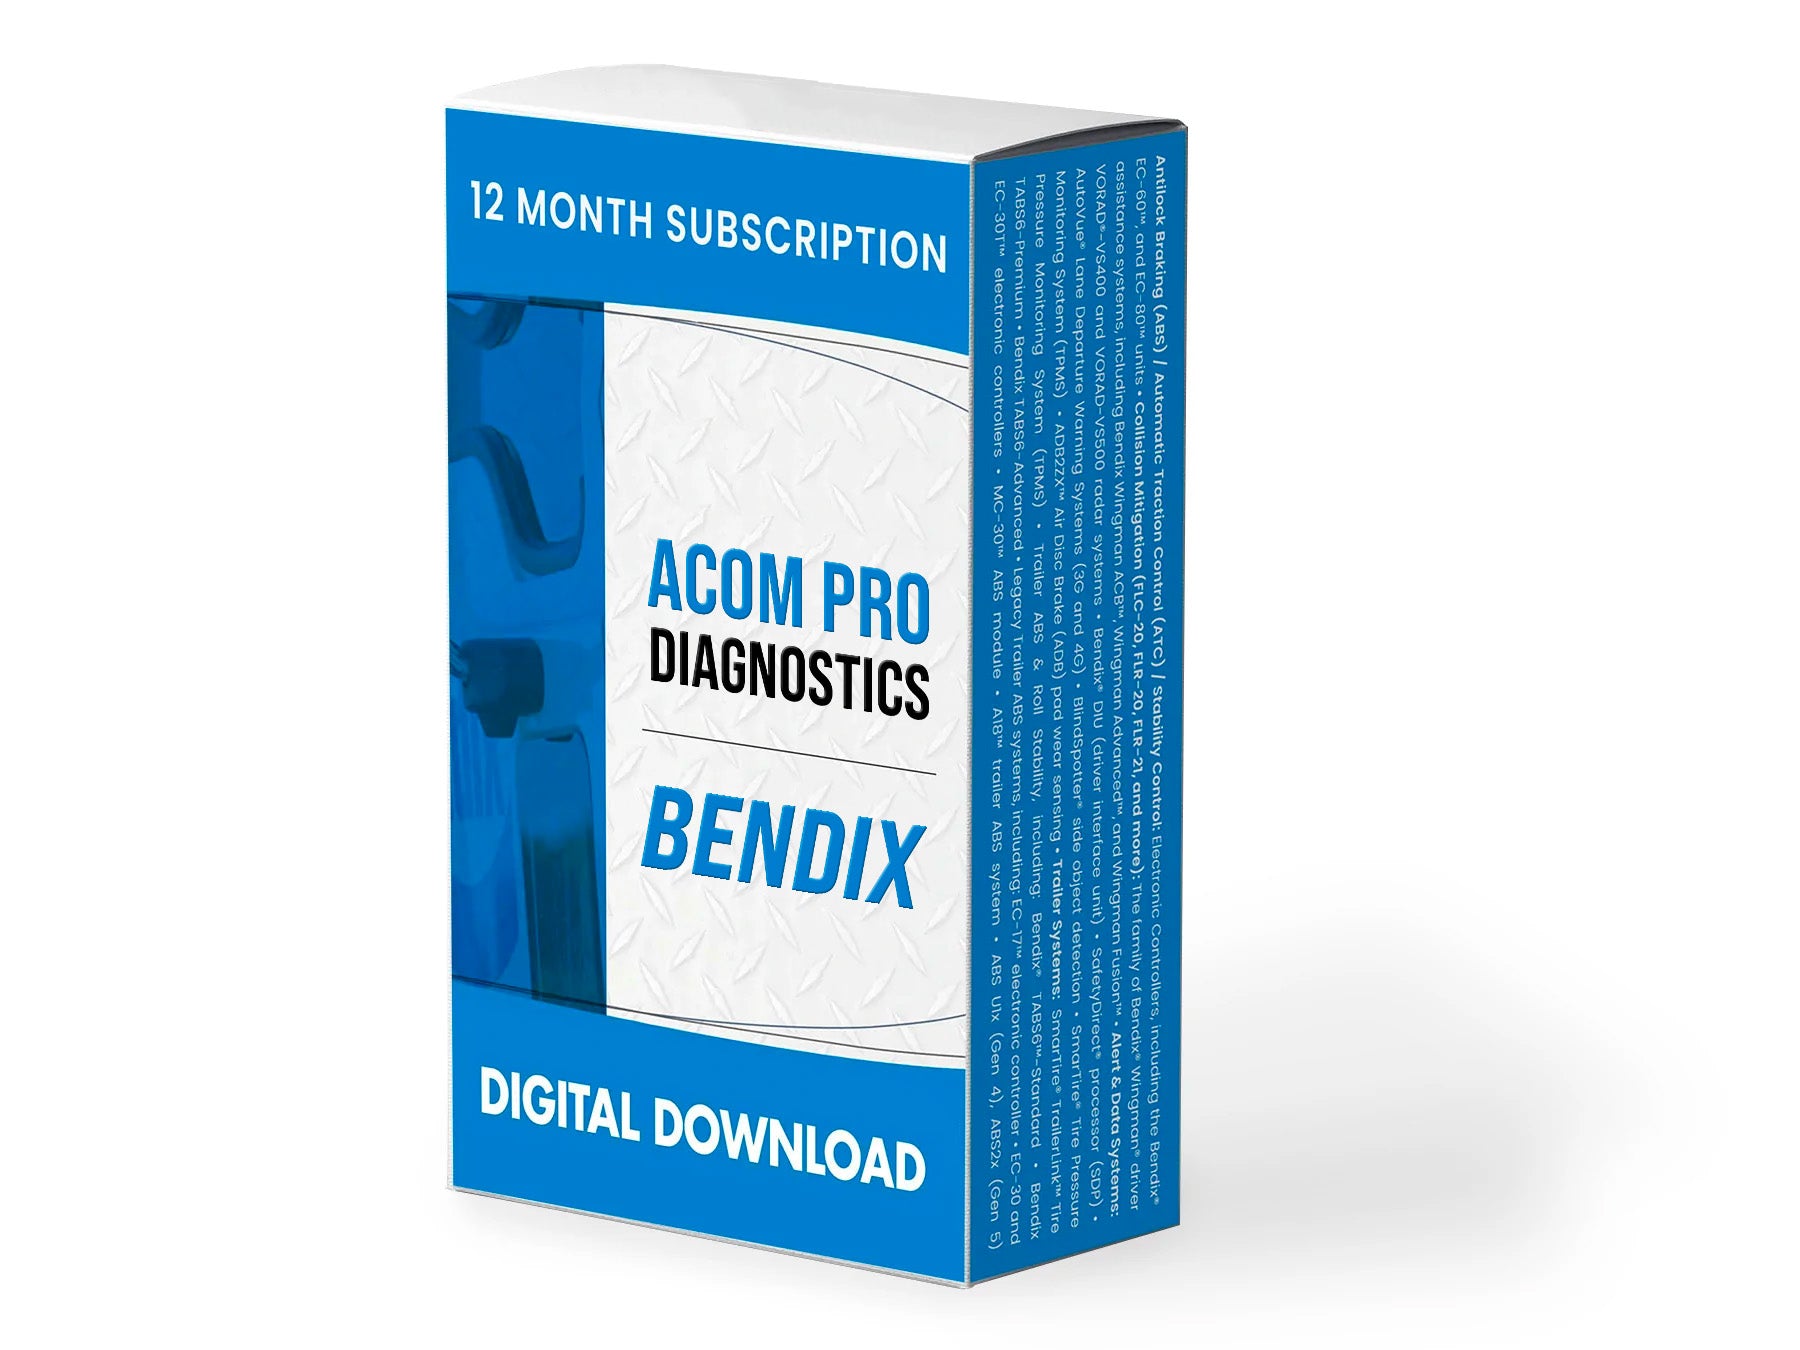 Bendix ACom PRO Diagnostics Software - 12 Month Subscription